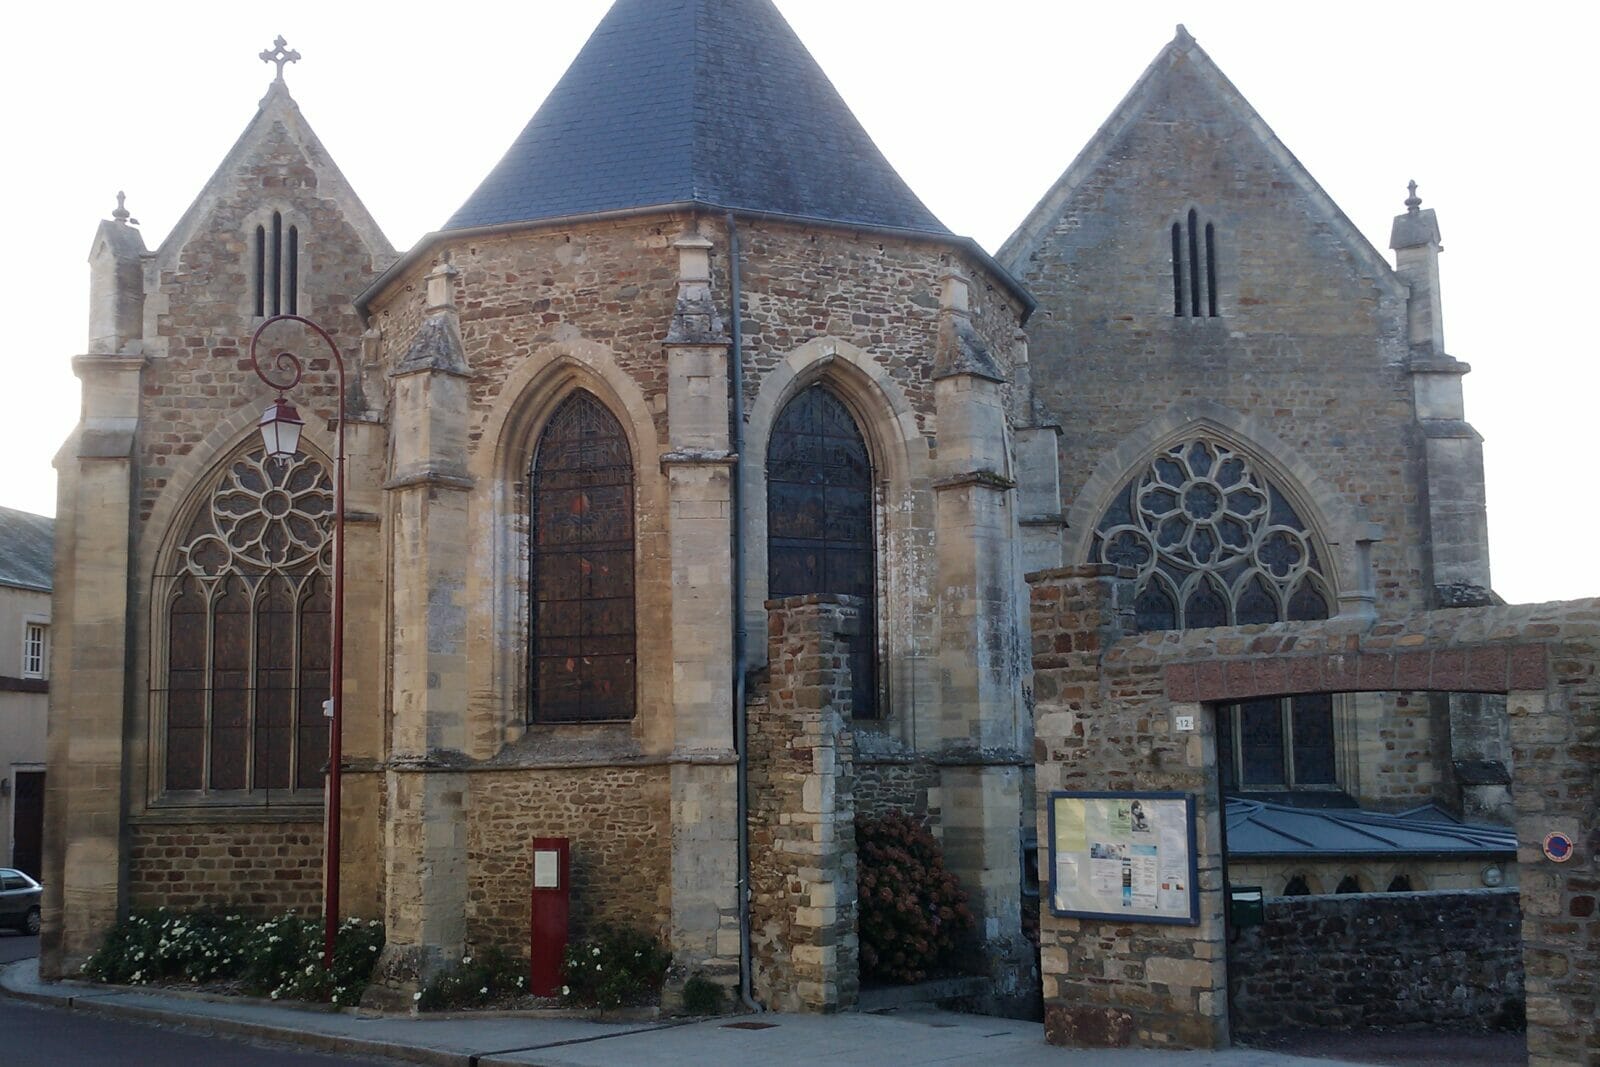 Torigni-sur-Vire